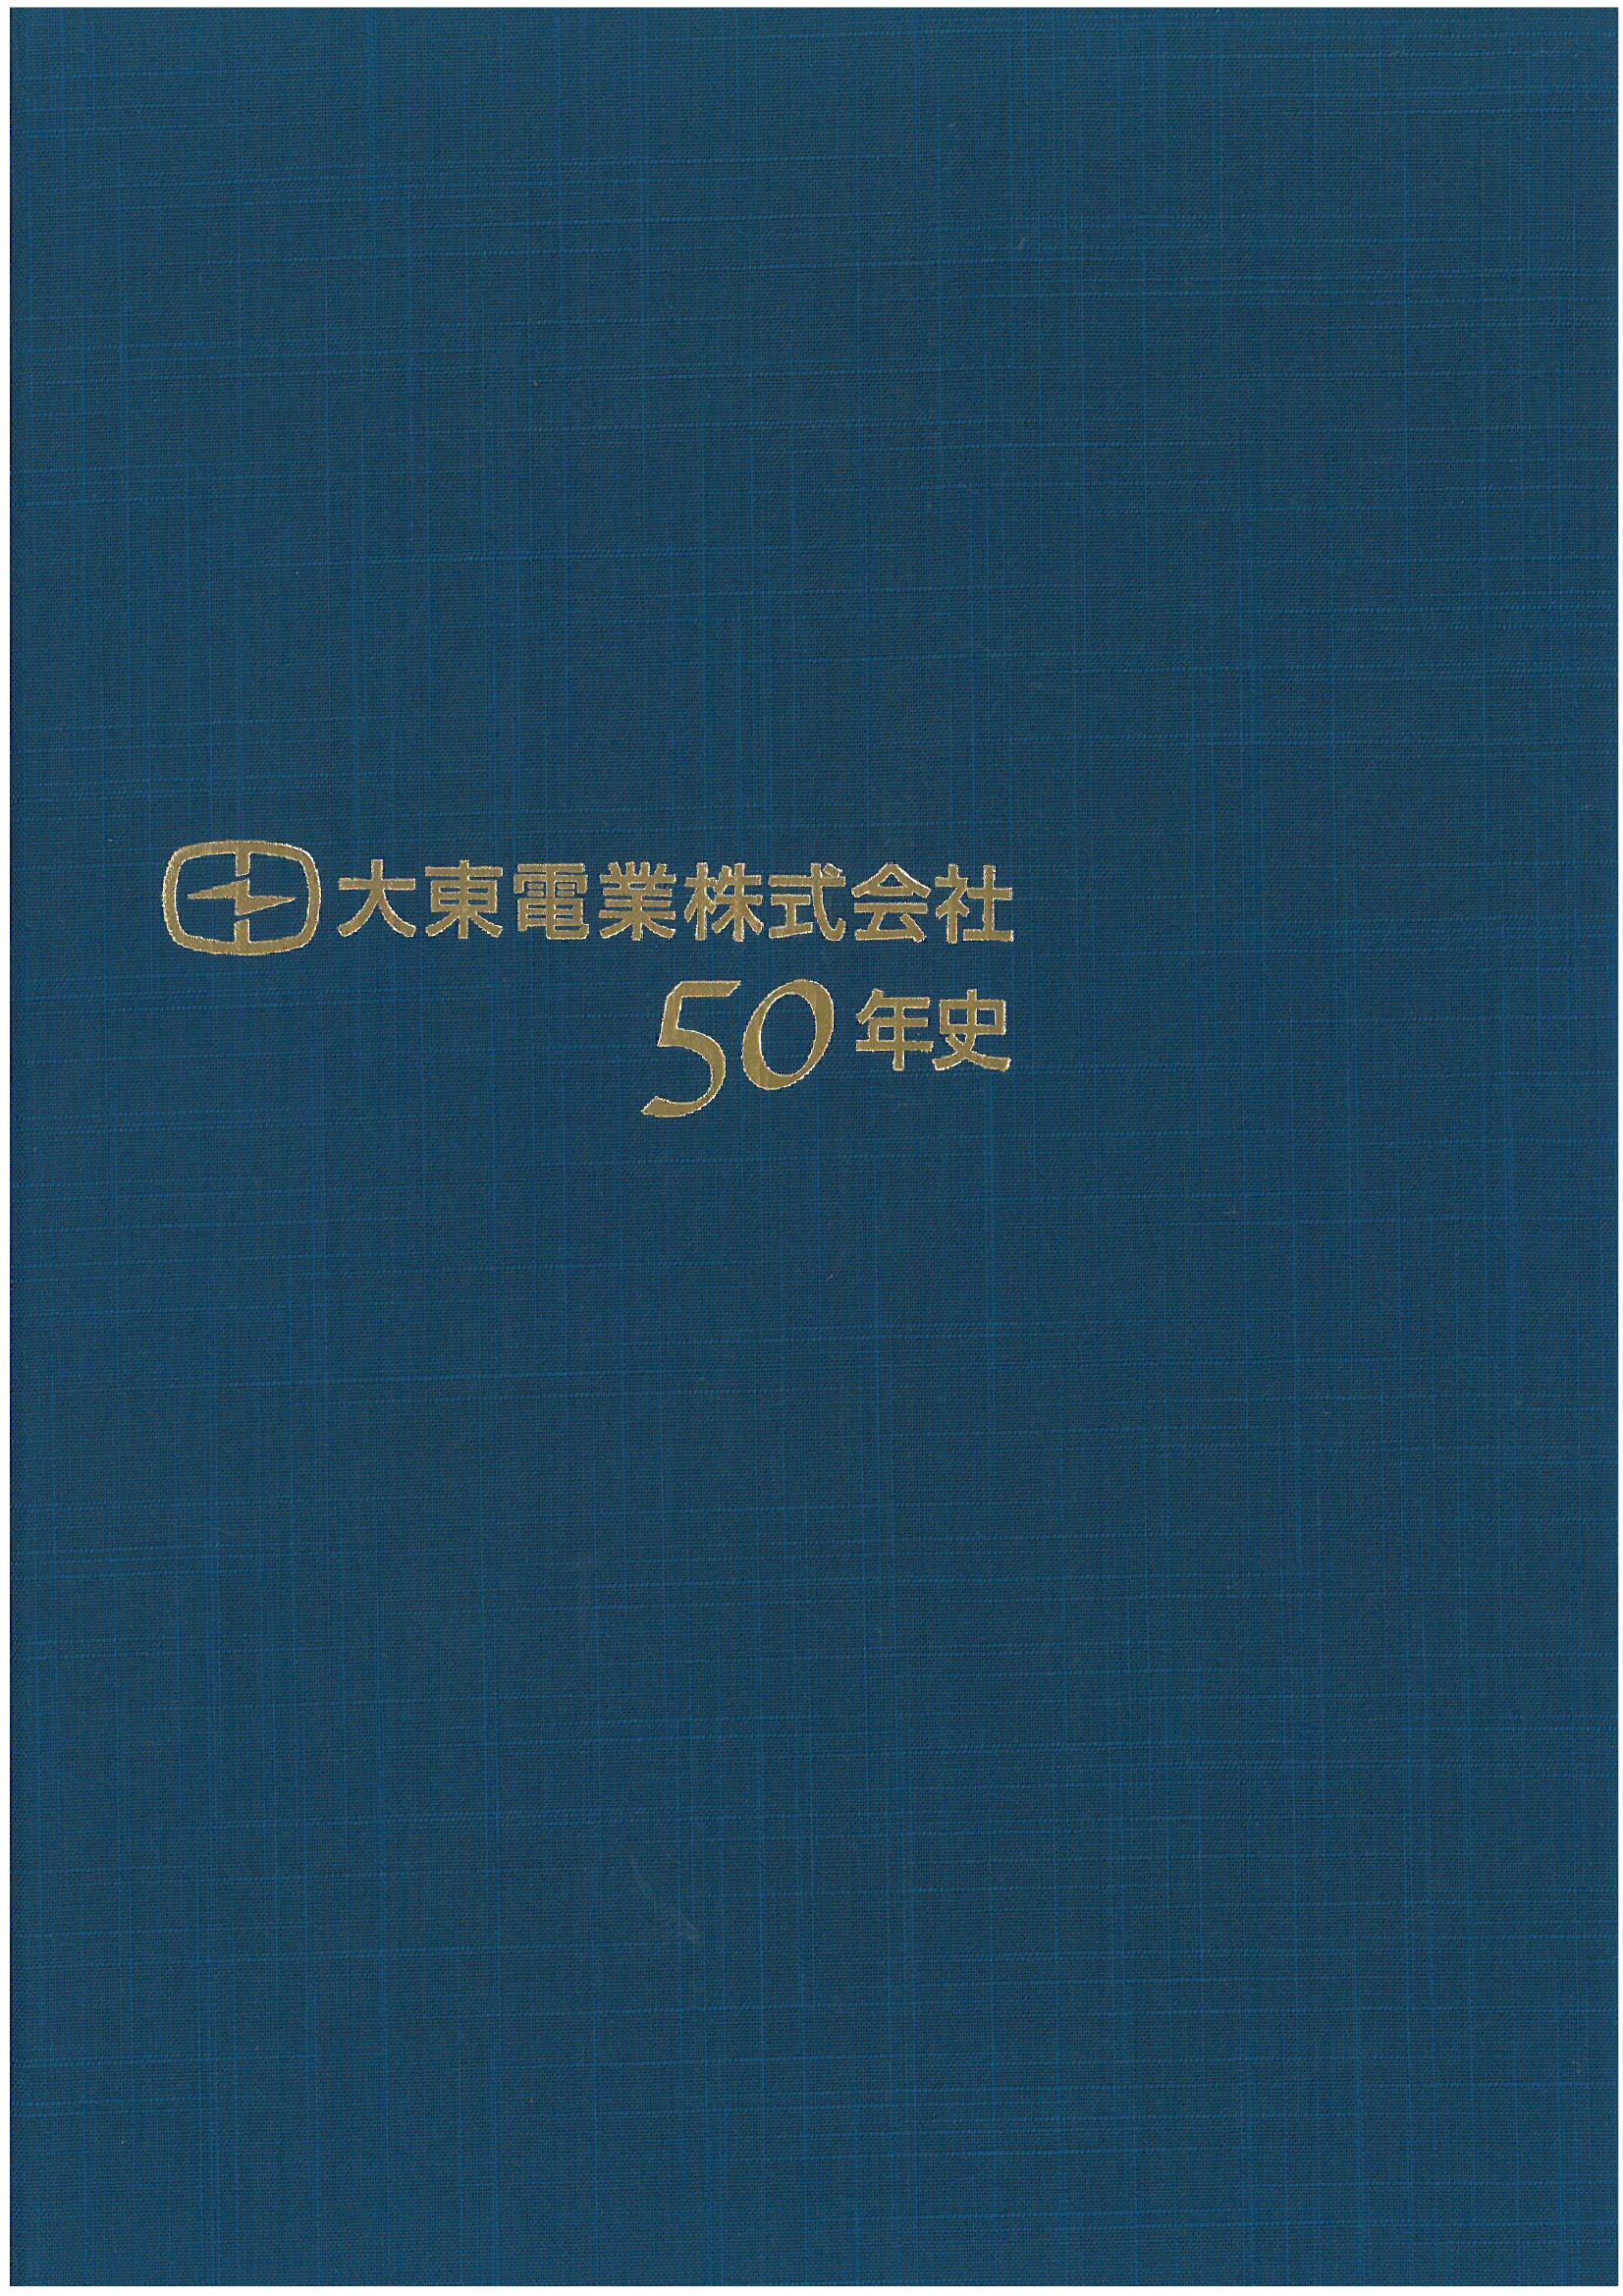 （社史表紙）大東電業株式会社50年史